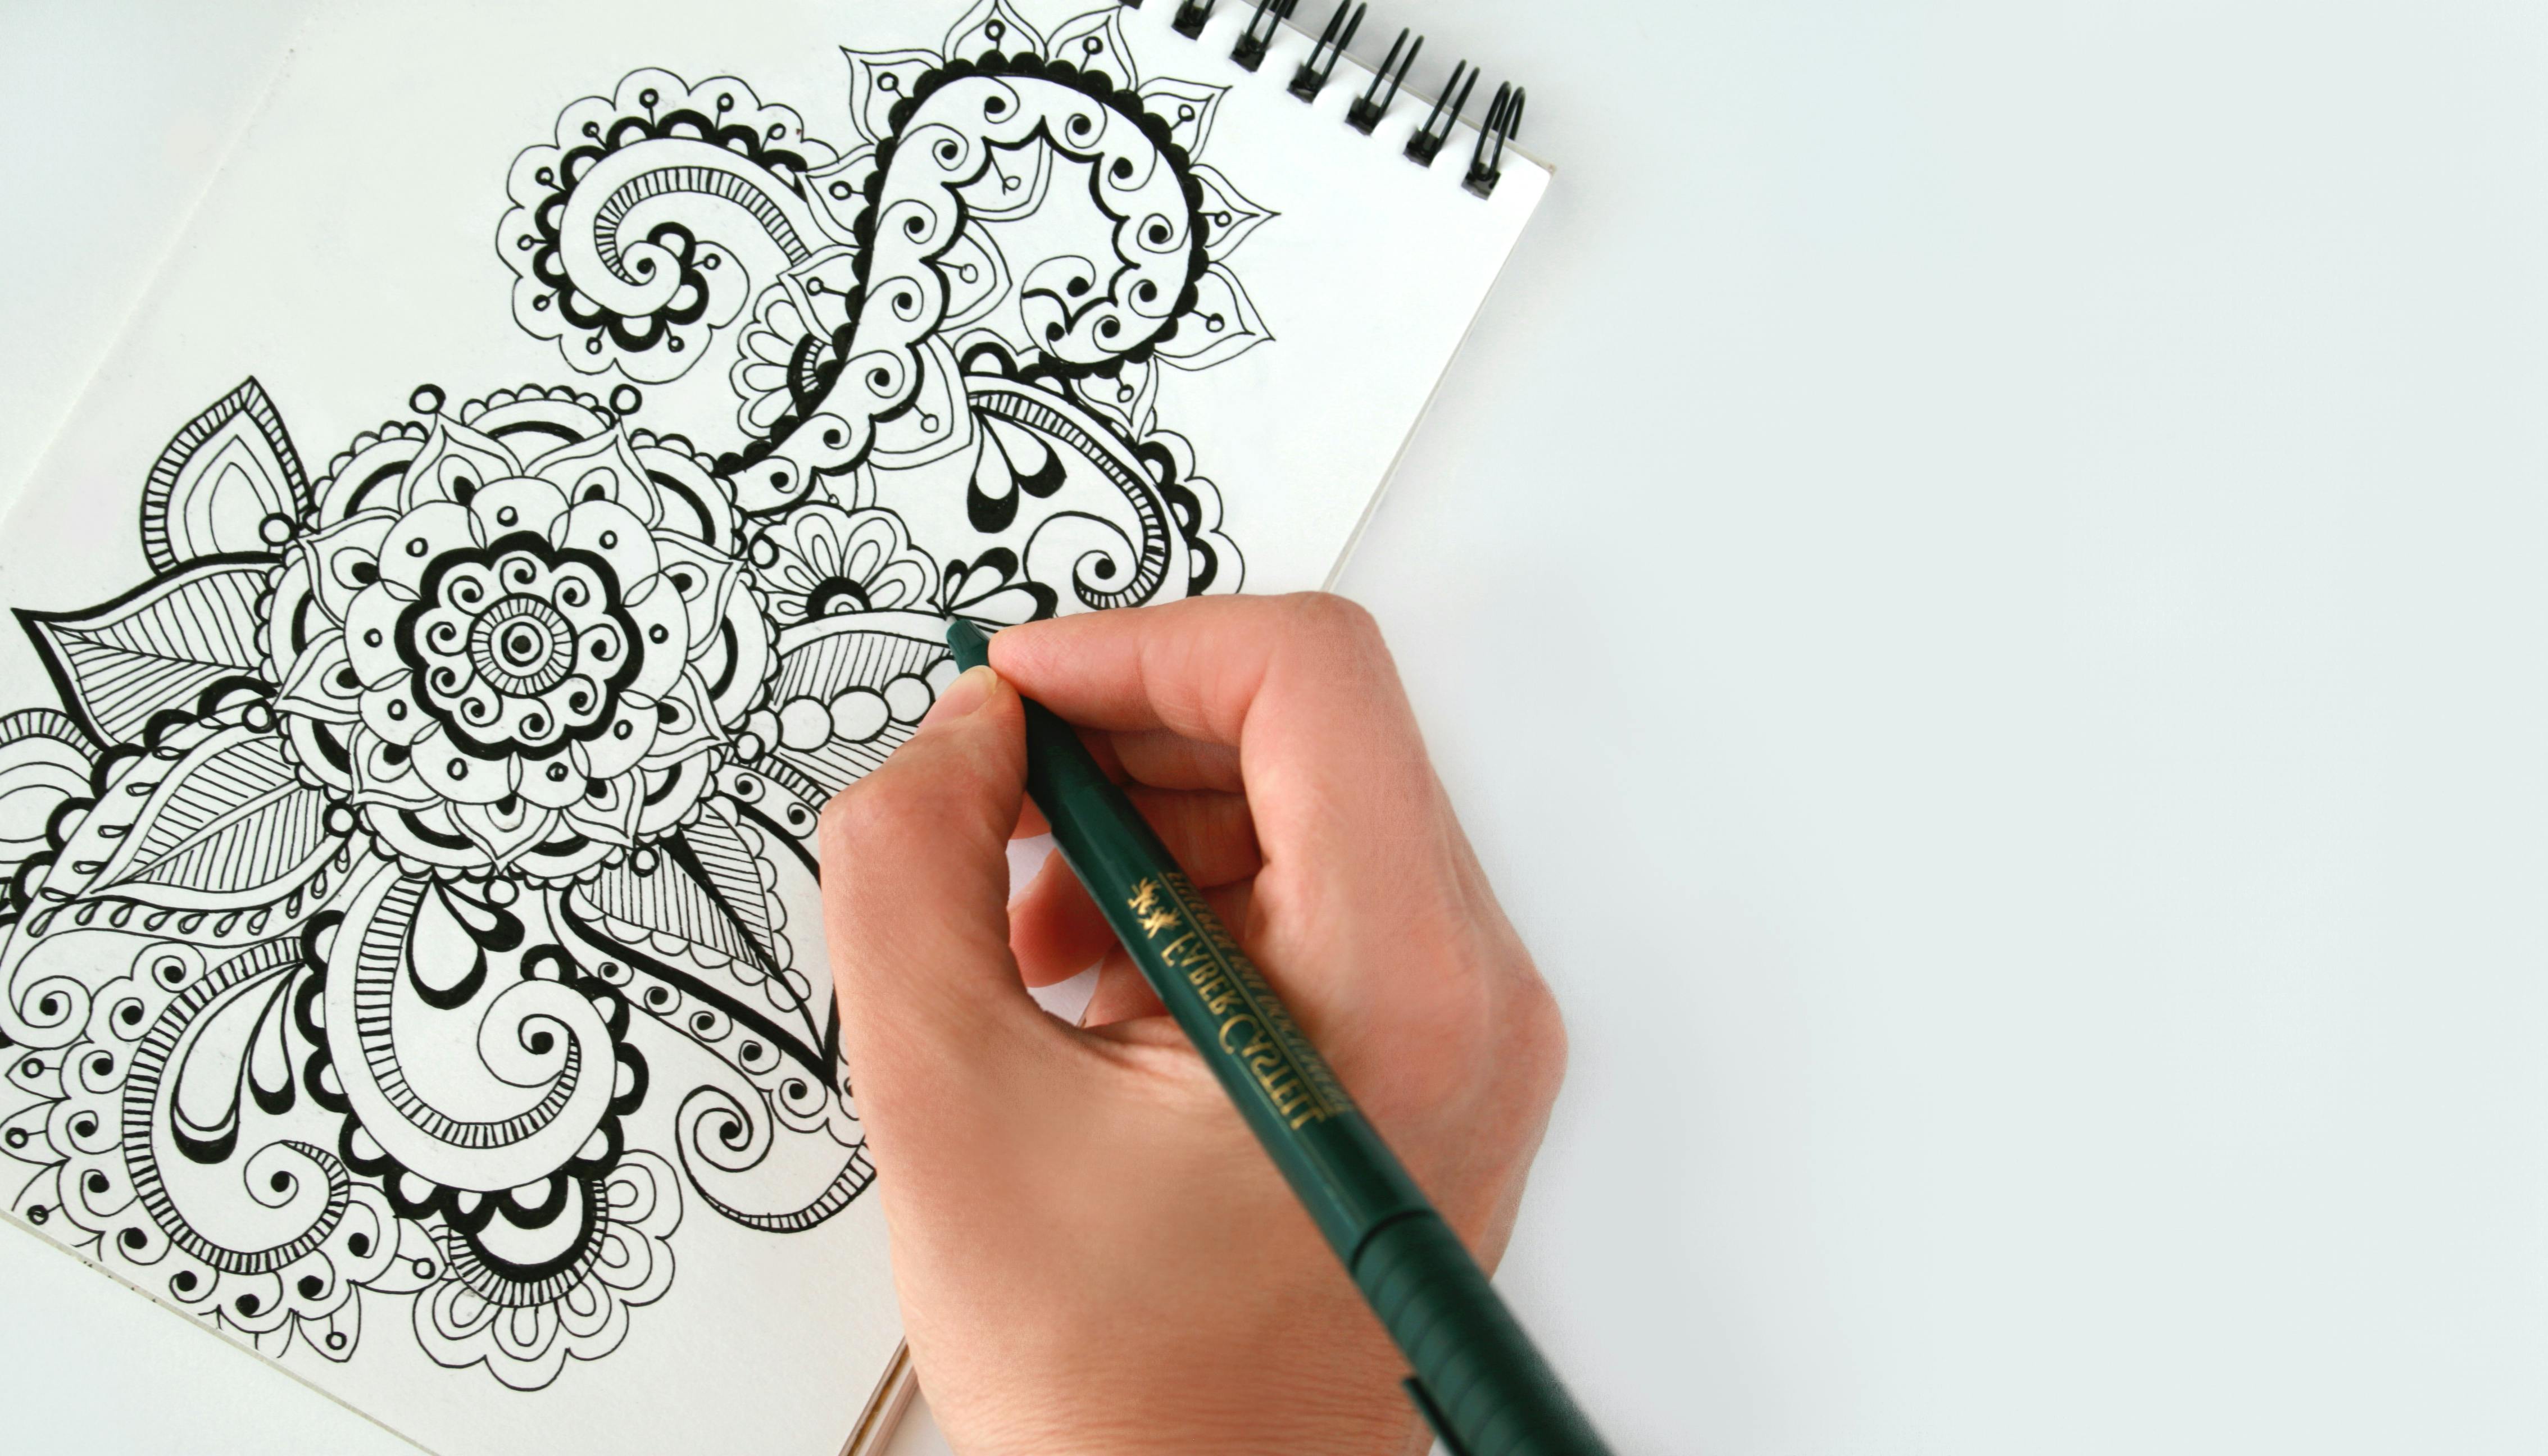 200+ Free Sketch Book & Sketch Images - Pixabay